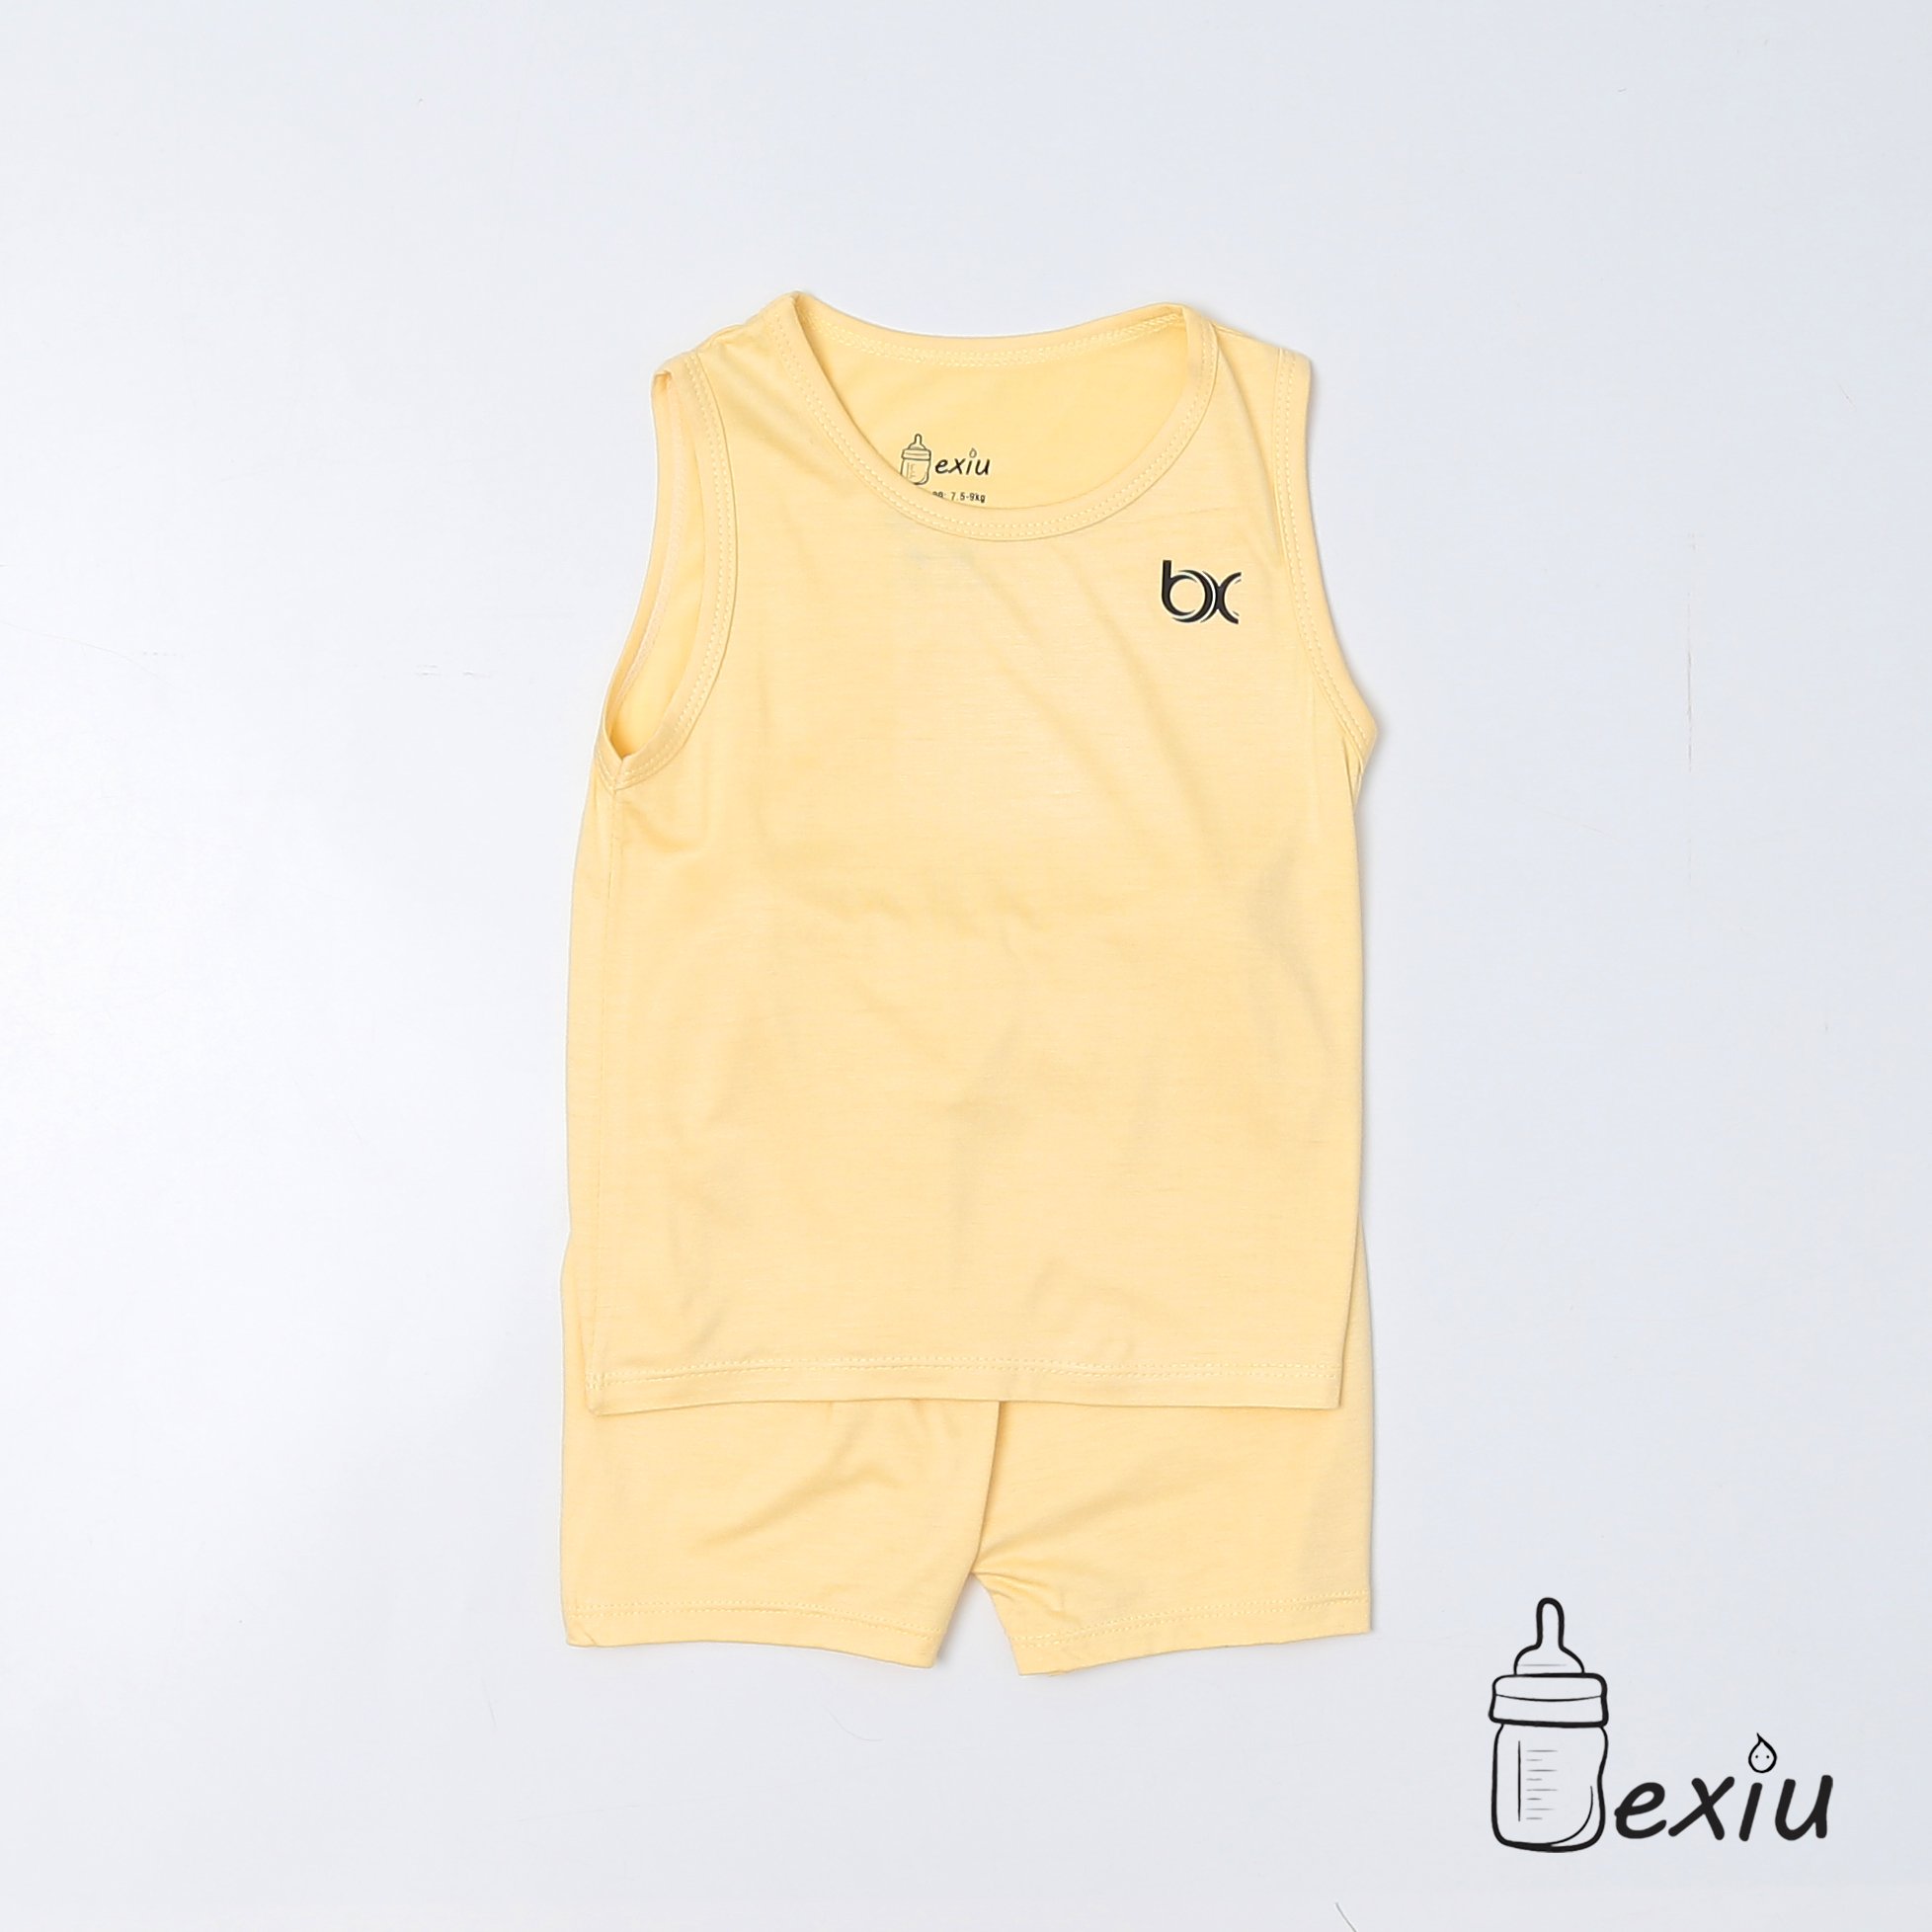 Hcmbộ ba lỗ màu bexiu bx - quần áo trẻ sơ sinh vải cotton lạnh mát mềm - ảnh sản phẩm 3